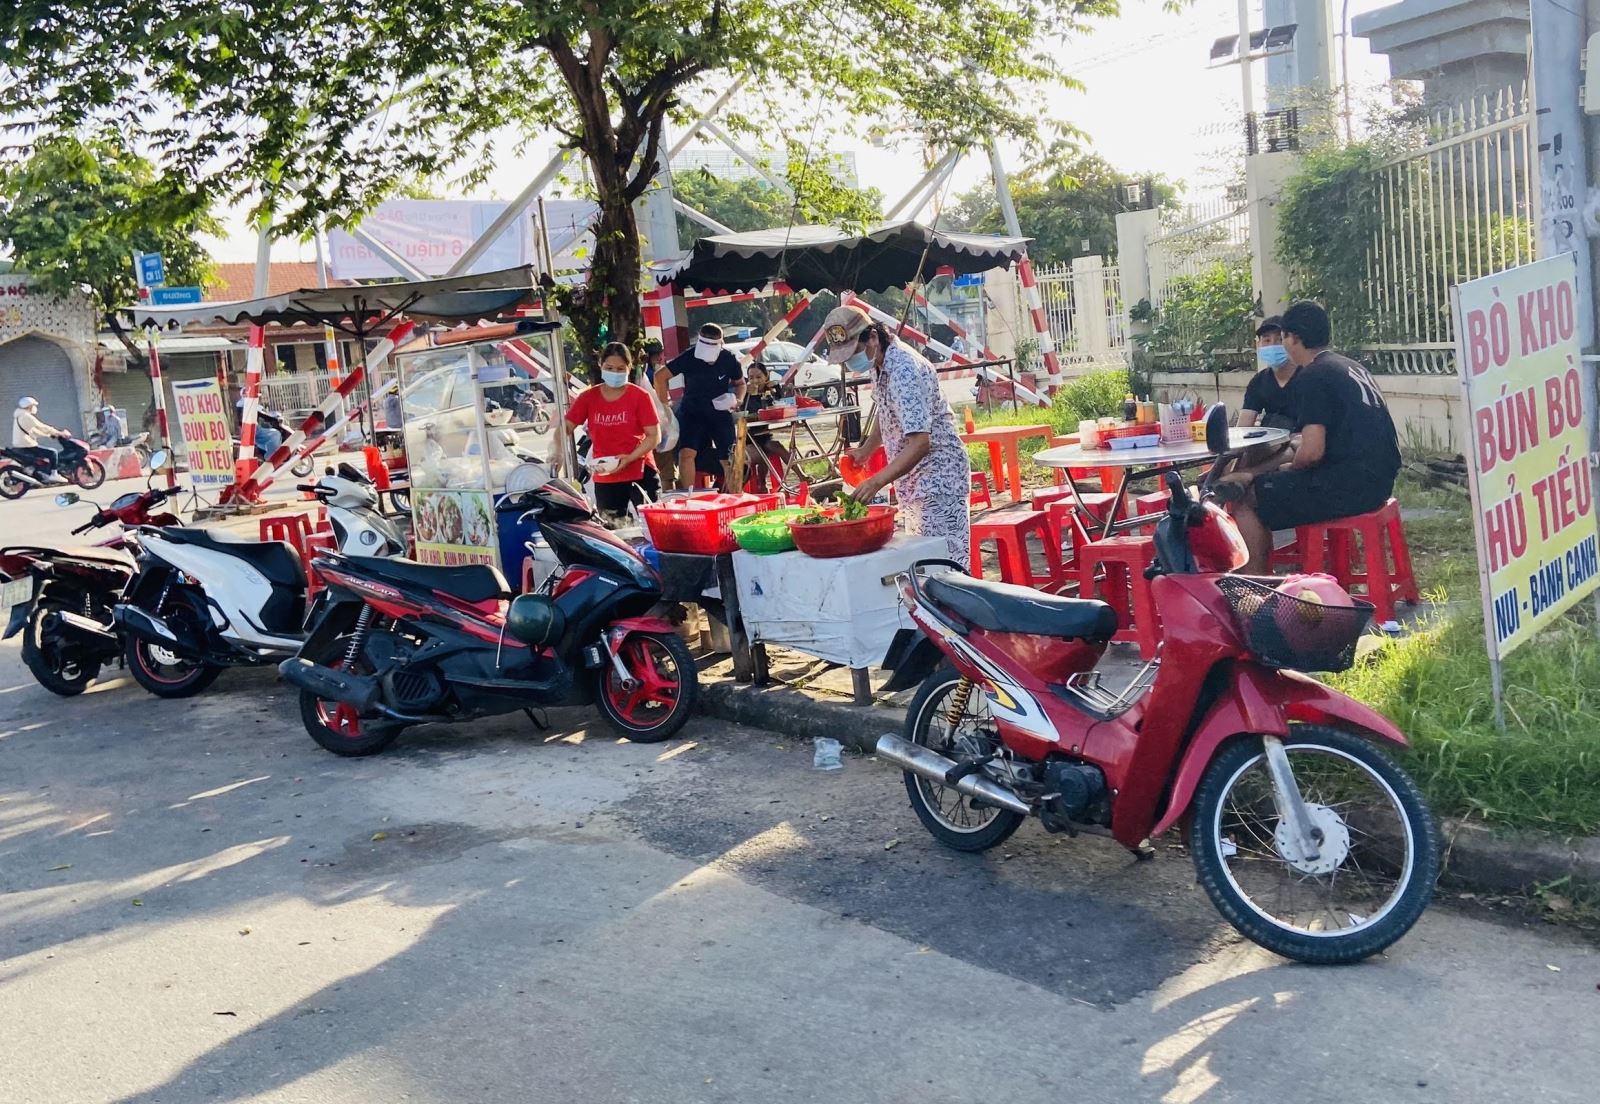 TP Hồ Chí Minh: Hàng quán tấp nập trong ngày đầu mở cửa phục vụ tại chỗ - Ảnh 5.